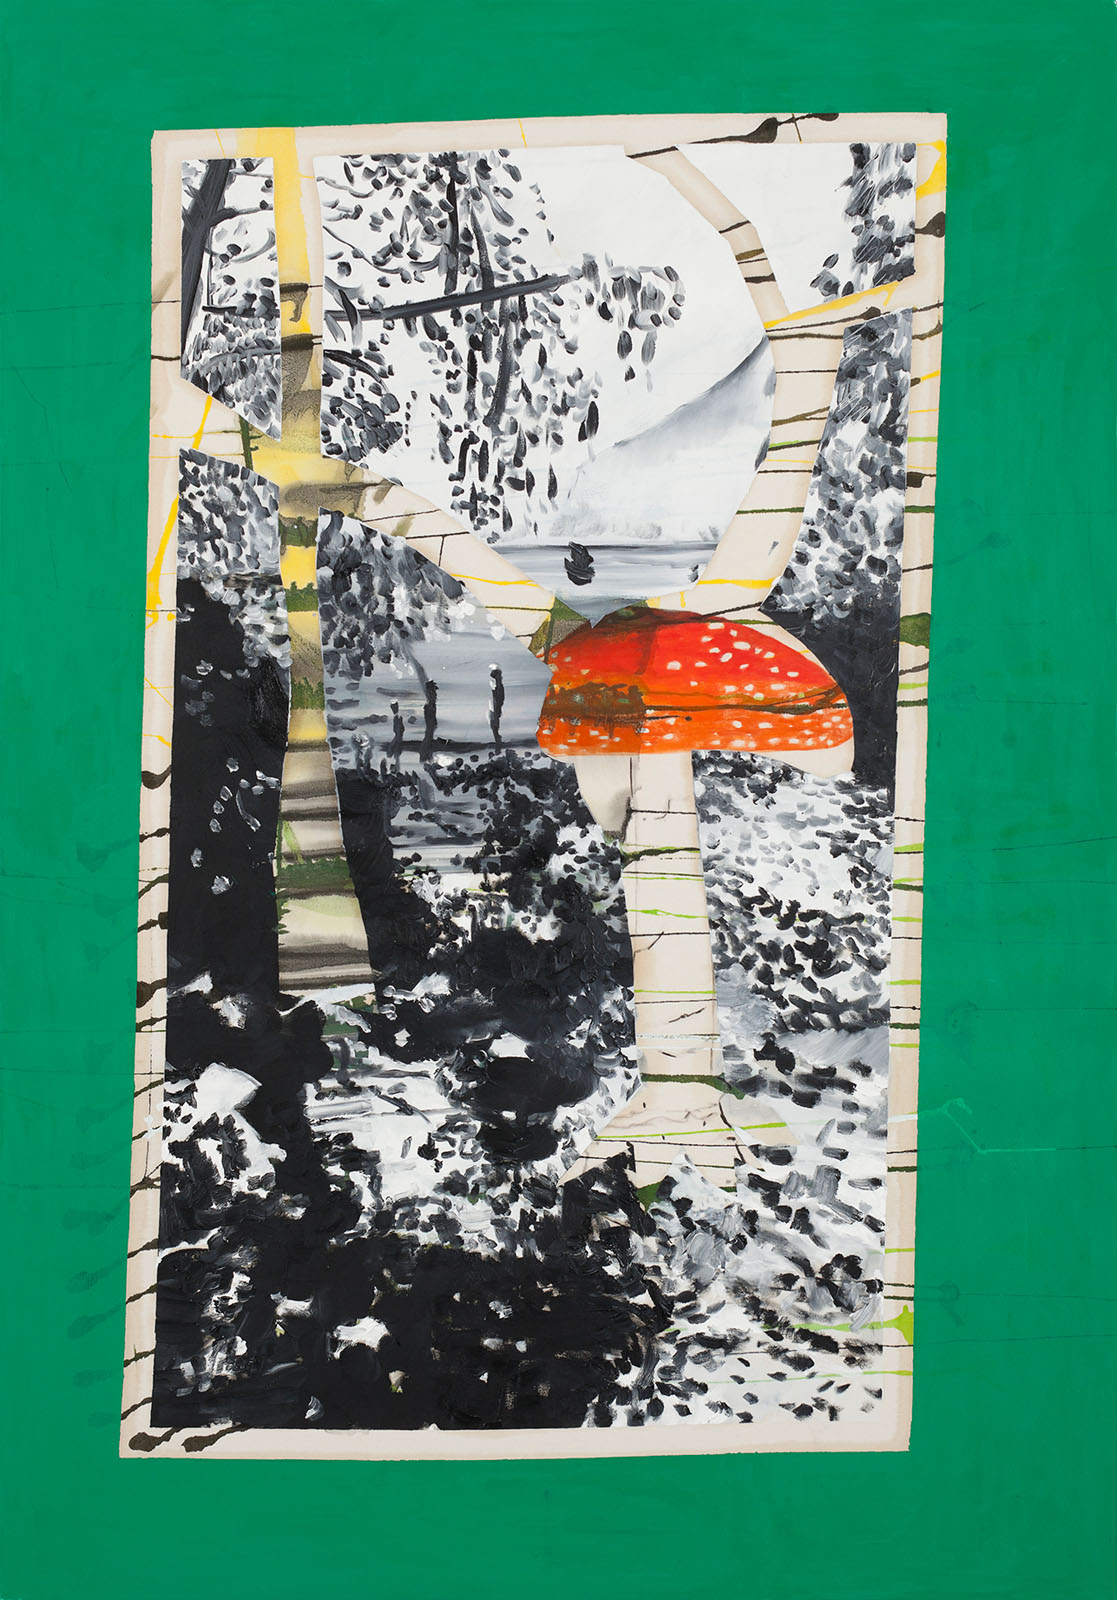 o.T. aus „Wenig Zeit zwischen zwei Fingern”, 2013, 200 x 140 cm, Mischtechnik auf Leinwand